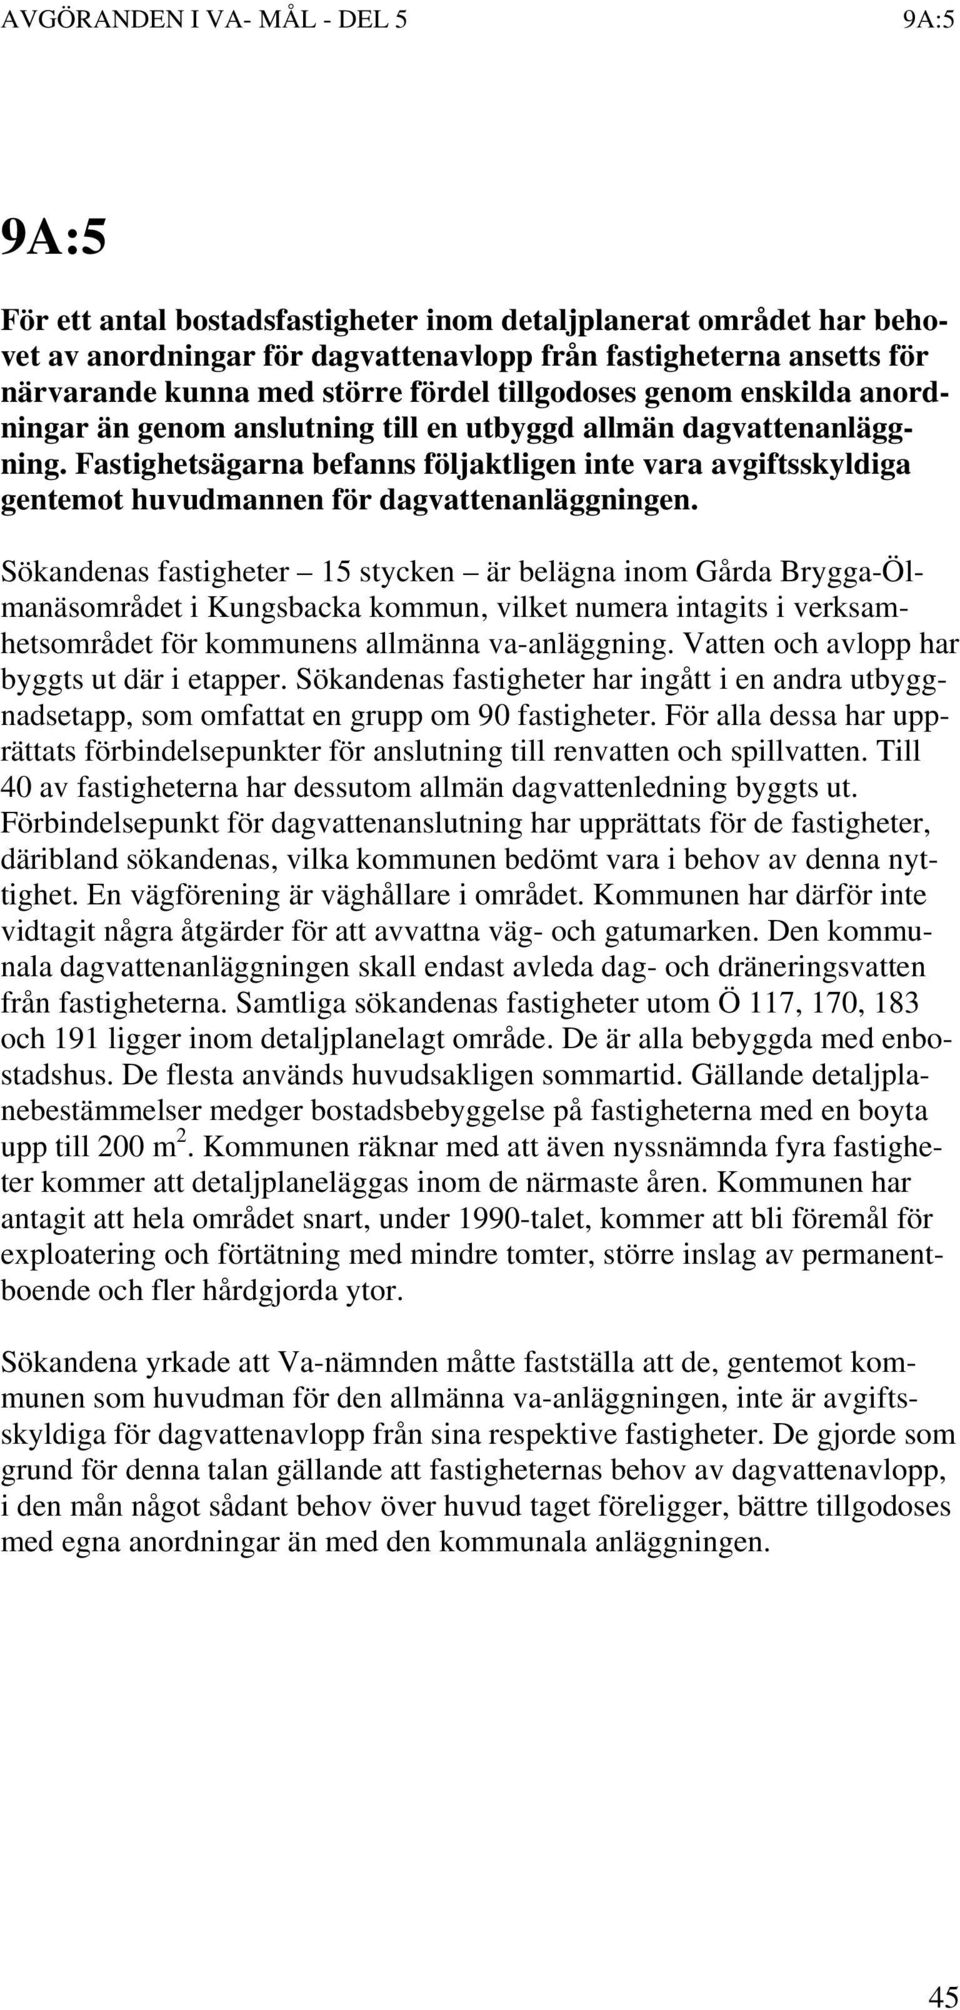 Sökandenas fastigheter 15 stycken är belägna inom Gårda Brygga-Ölmanäsområdet i Kungsbacka kommun, vilket numera intagits i verksamhetsområdet för kommunens allmänna va-anläggning.